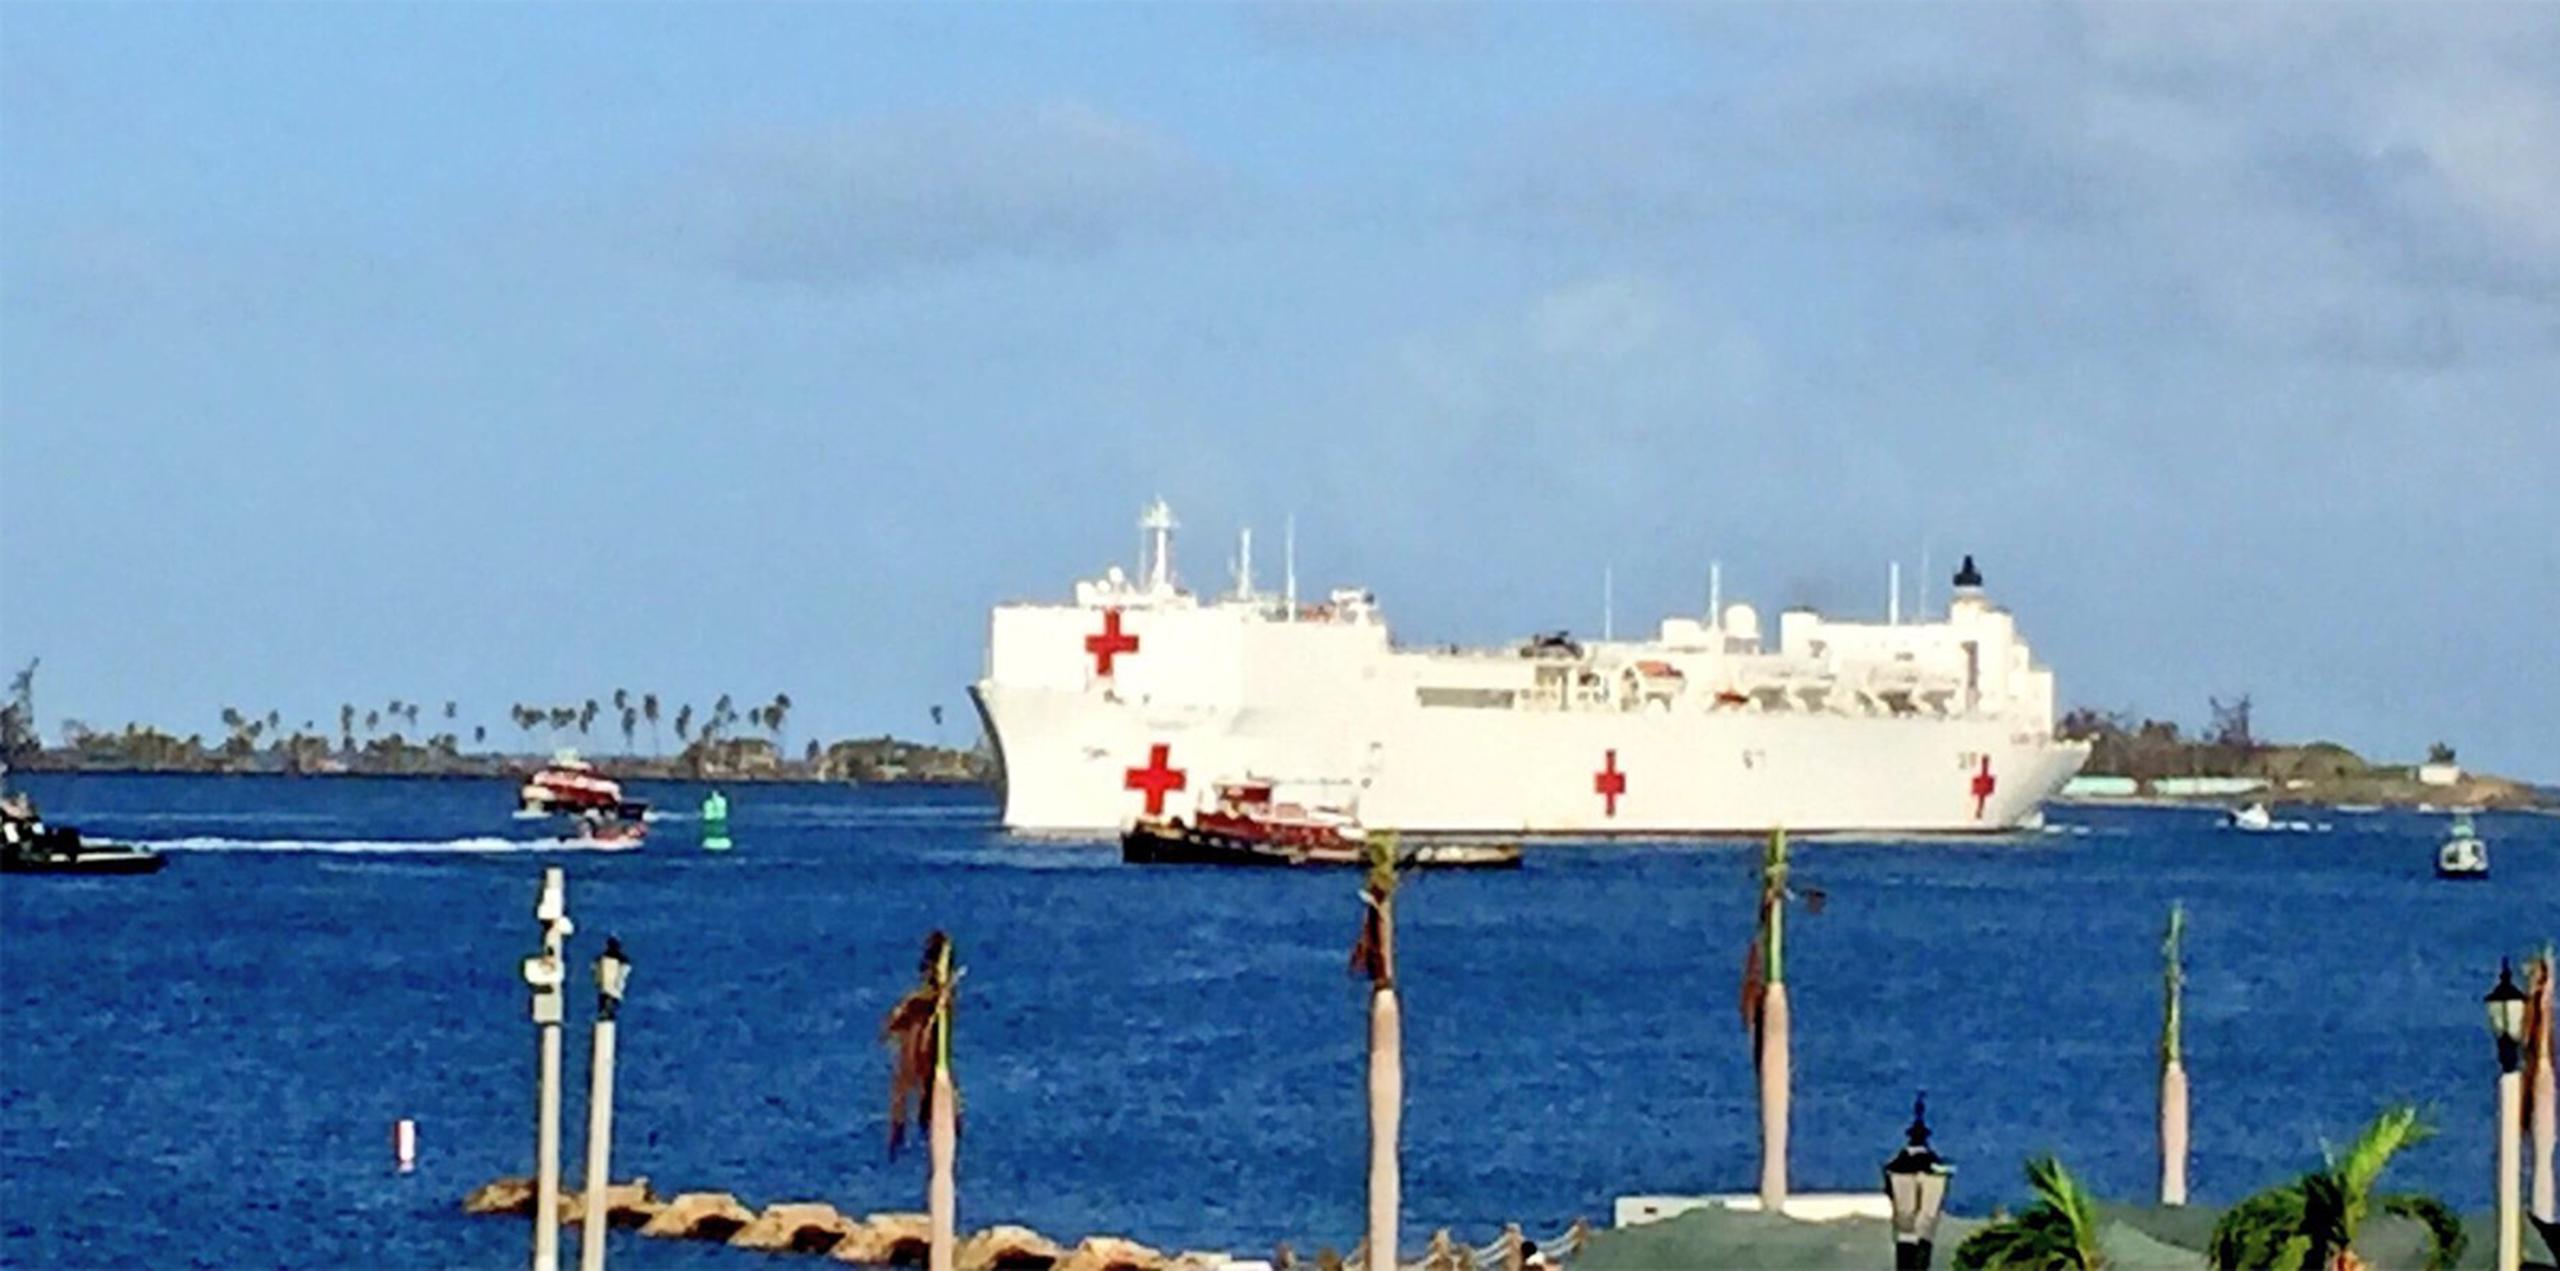 En el buque cuentan con material suficiente para atender a enfermos durante treinta días y hasta 200 pacientes diarios. (Twitter/prfaa)